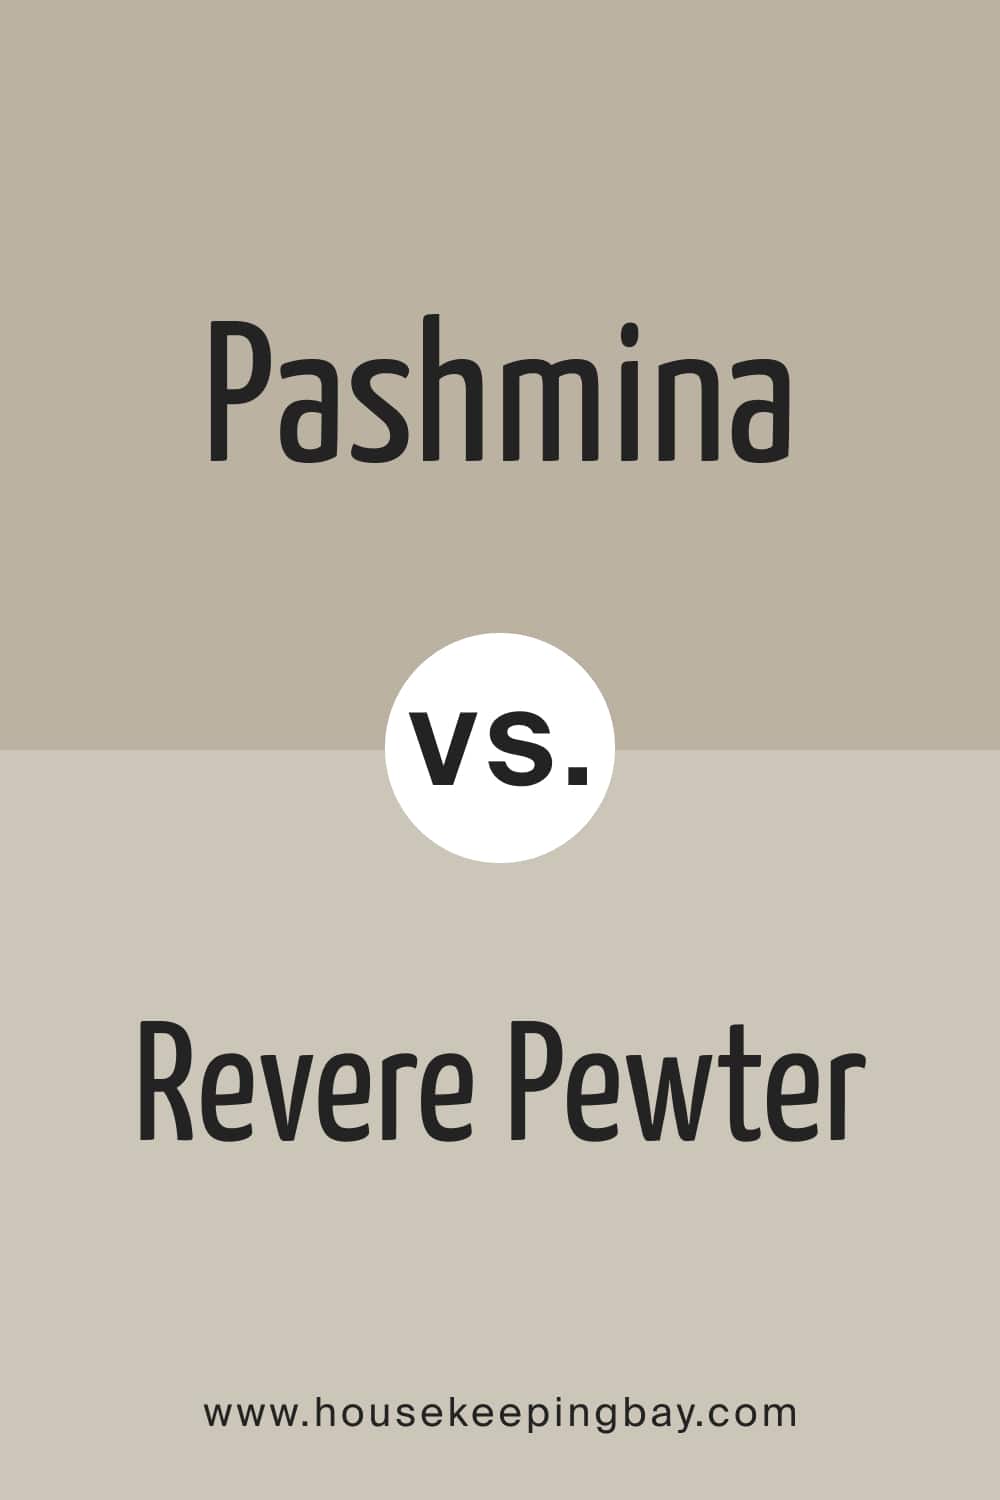 Pashmina vs Revere Pewter